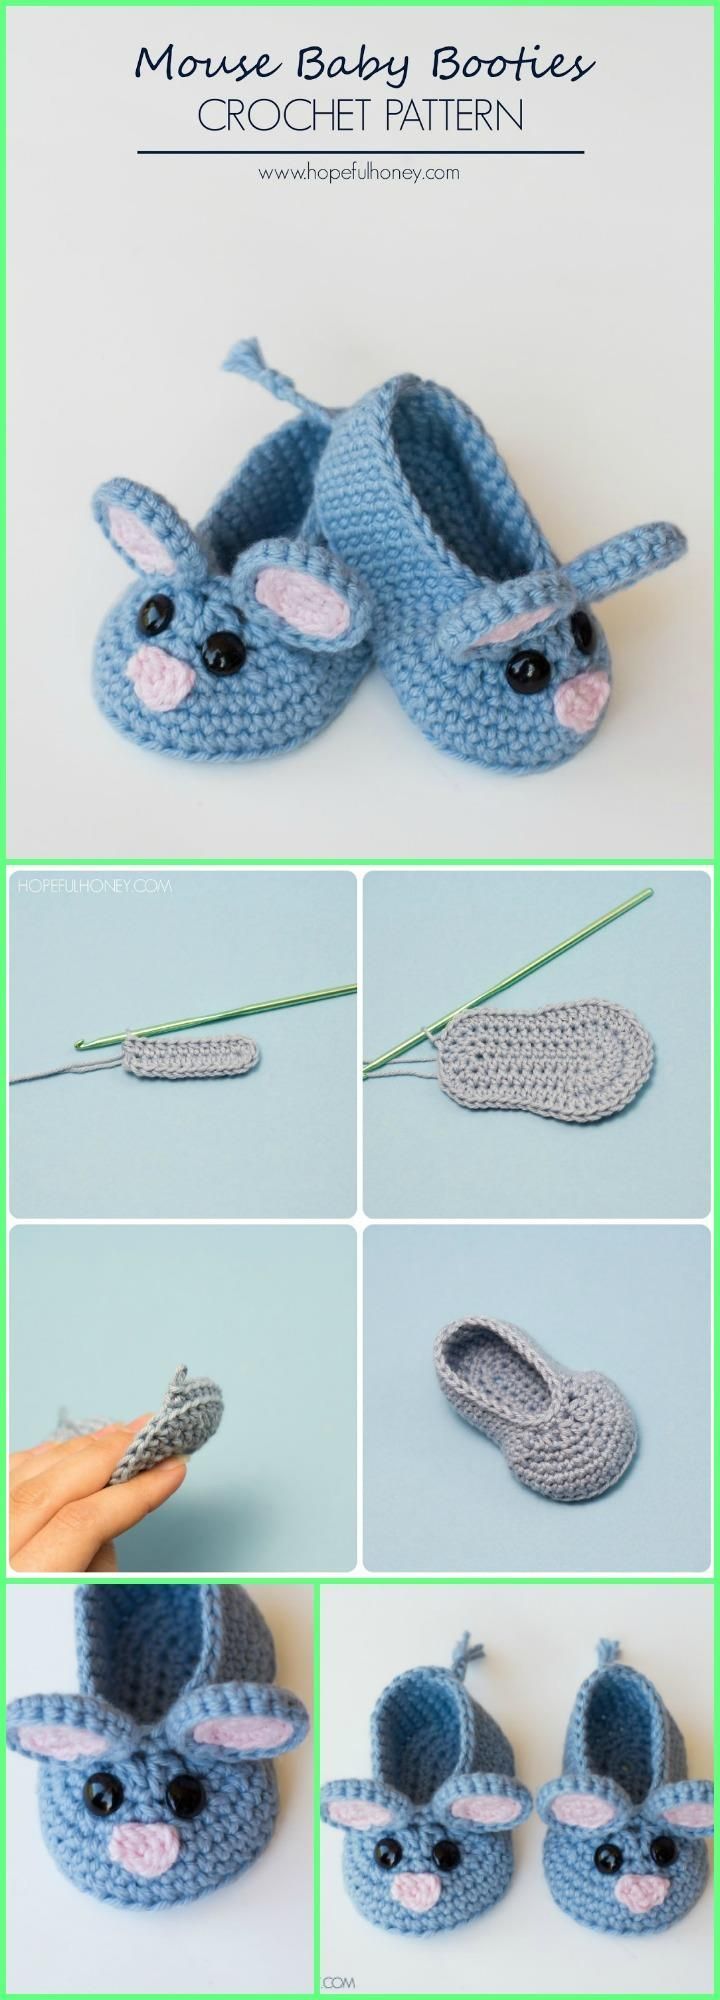 Crochet Baby Booties – Top 40 Free Crochet Patterns